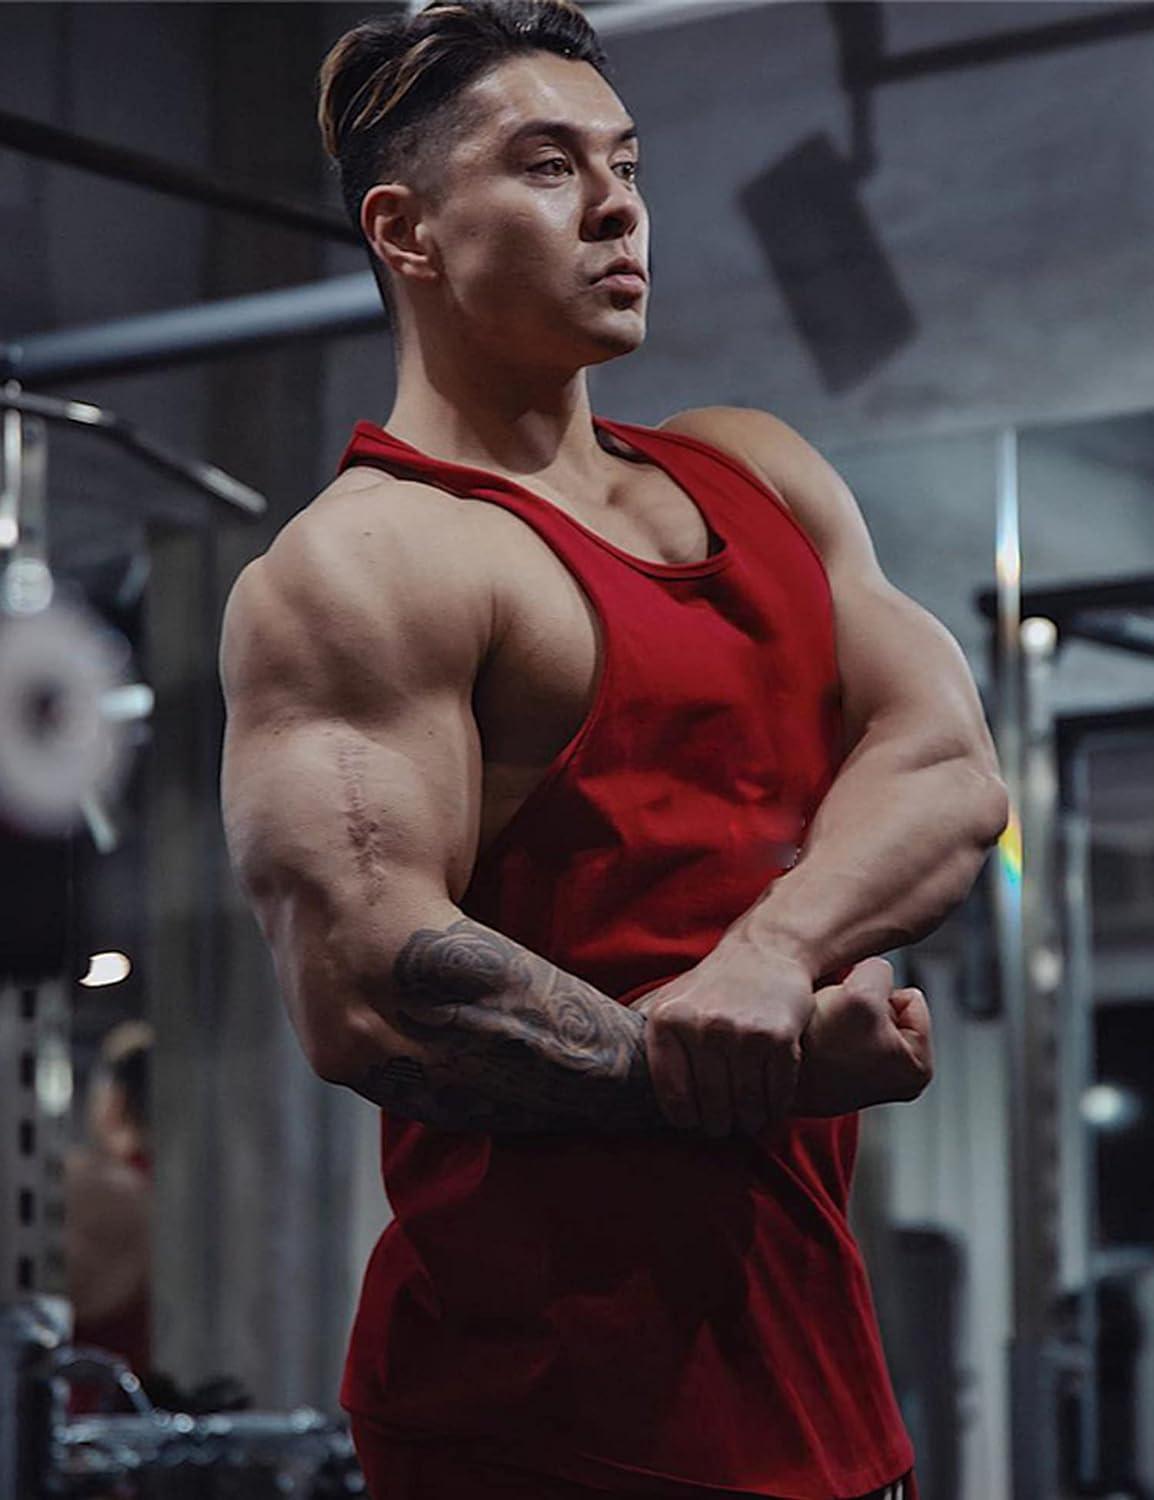 Men Gym Tank Top Muscle Shirt Y Back Stringer Vest Bodybuilding Fitness  Muscle 